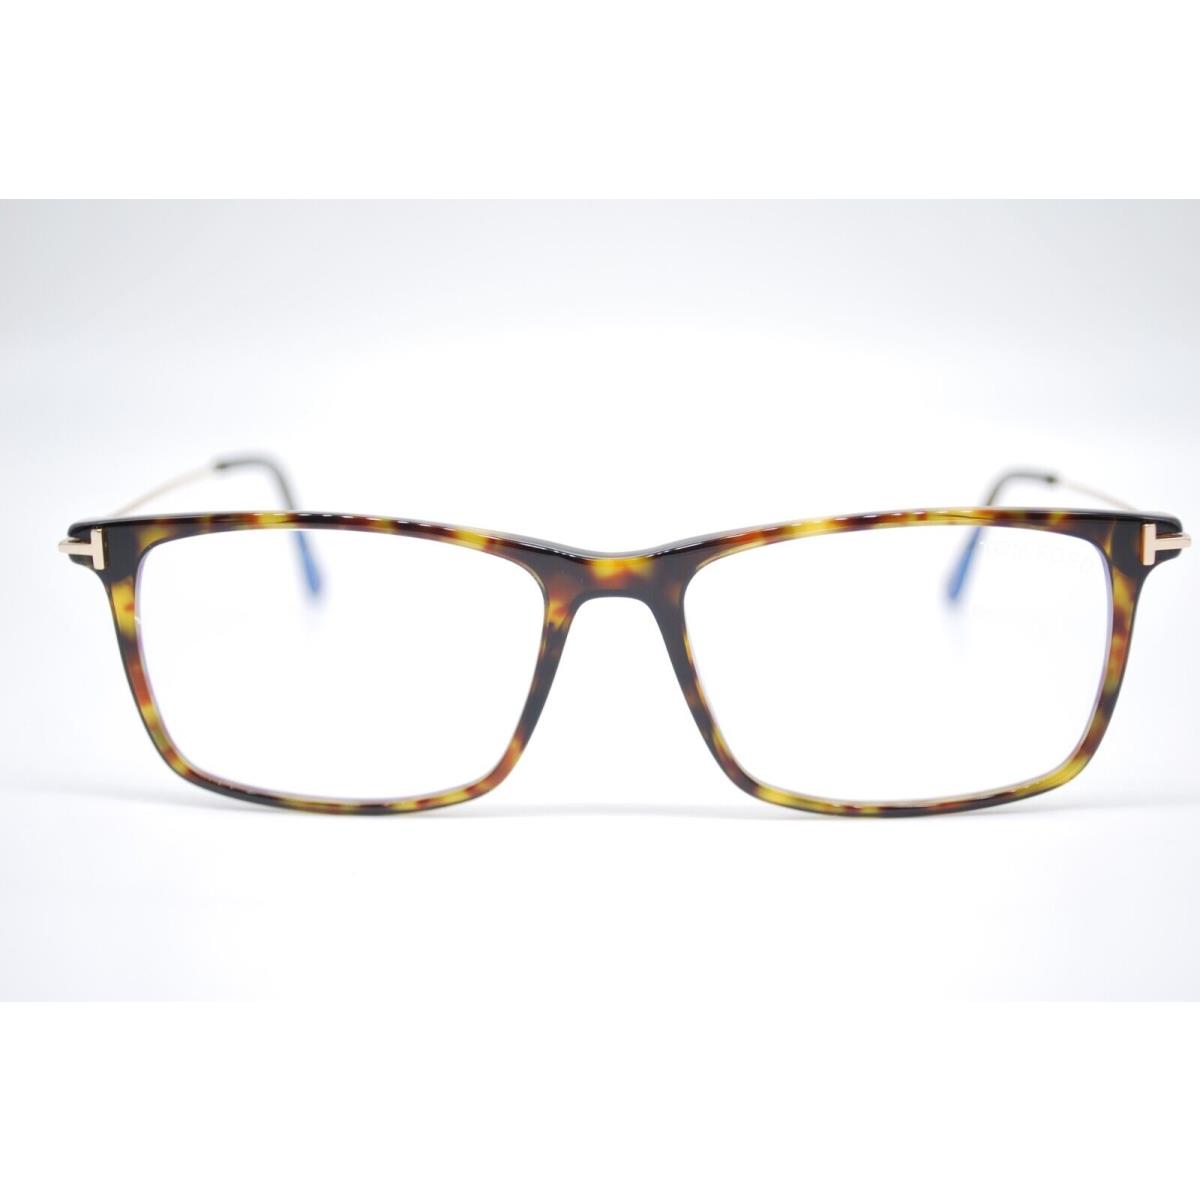 Tom Ford eyeglasses  - HAVANA GOLD Frame 1